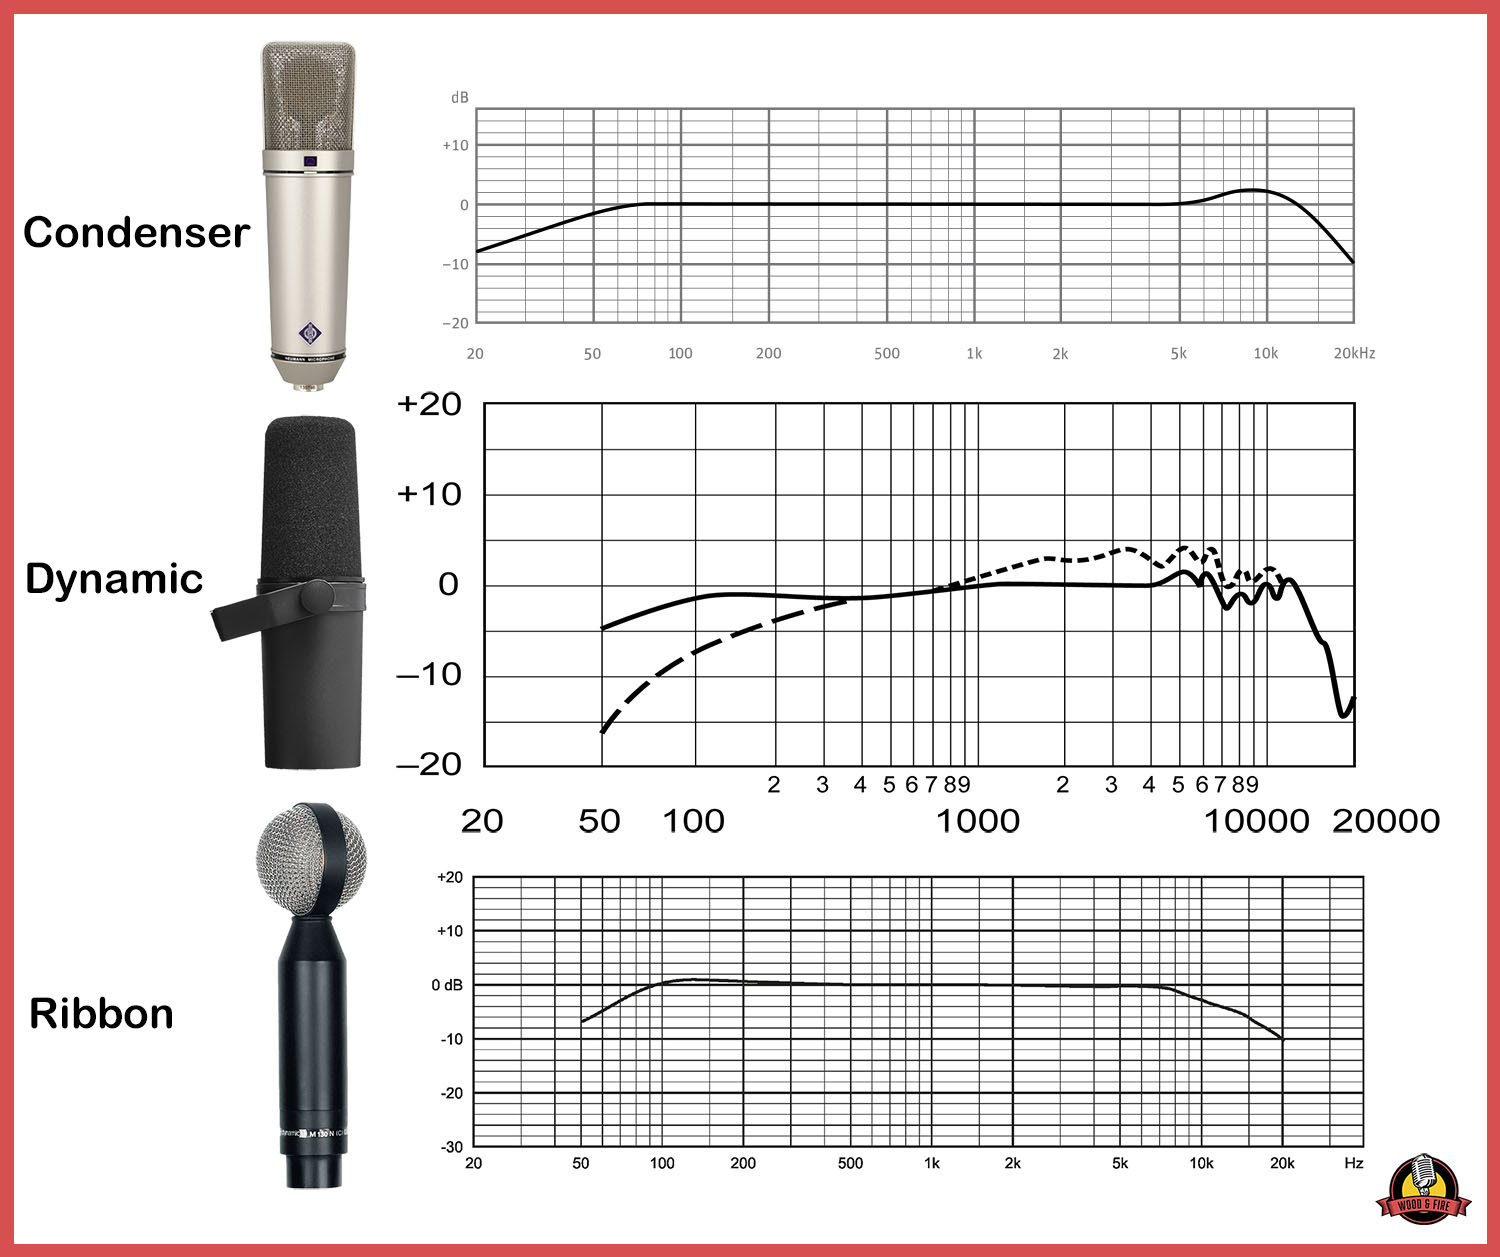 Comparación de las curvas de frecuencia de cada tipo de micrófono con los modelos más populares de cada clase